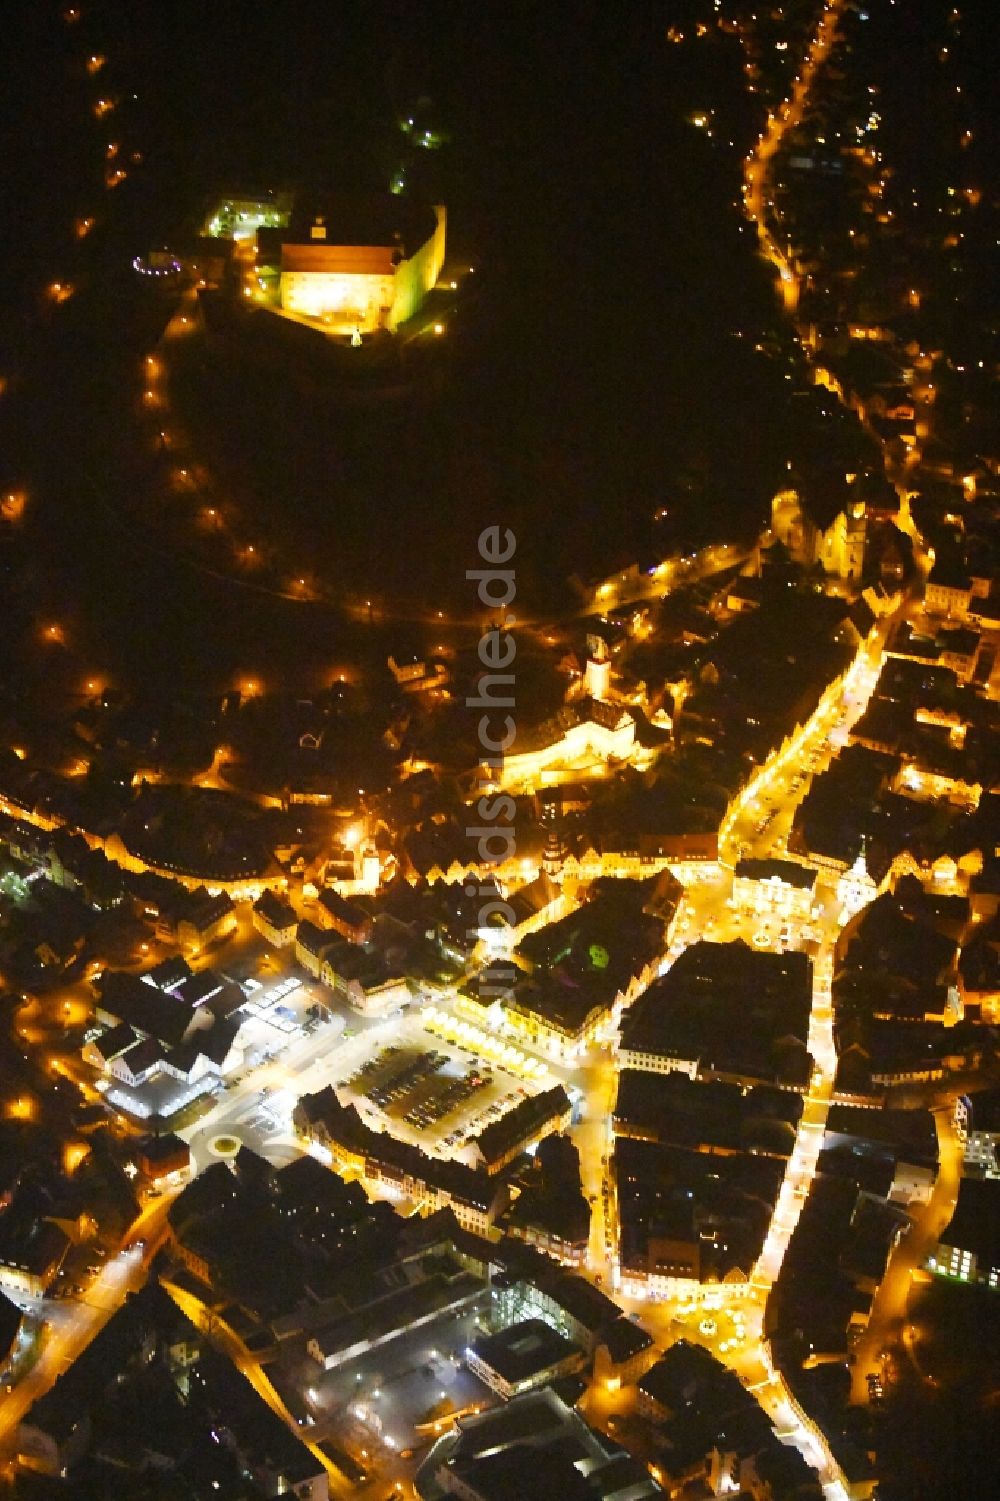 Kulmbach bei Nacht aus der Vogelperspektive: Nachtluftbild Stadtzentrum im Innenstadtbereich in Kulmbach im Bundesland Bayern, Deutschland